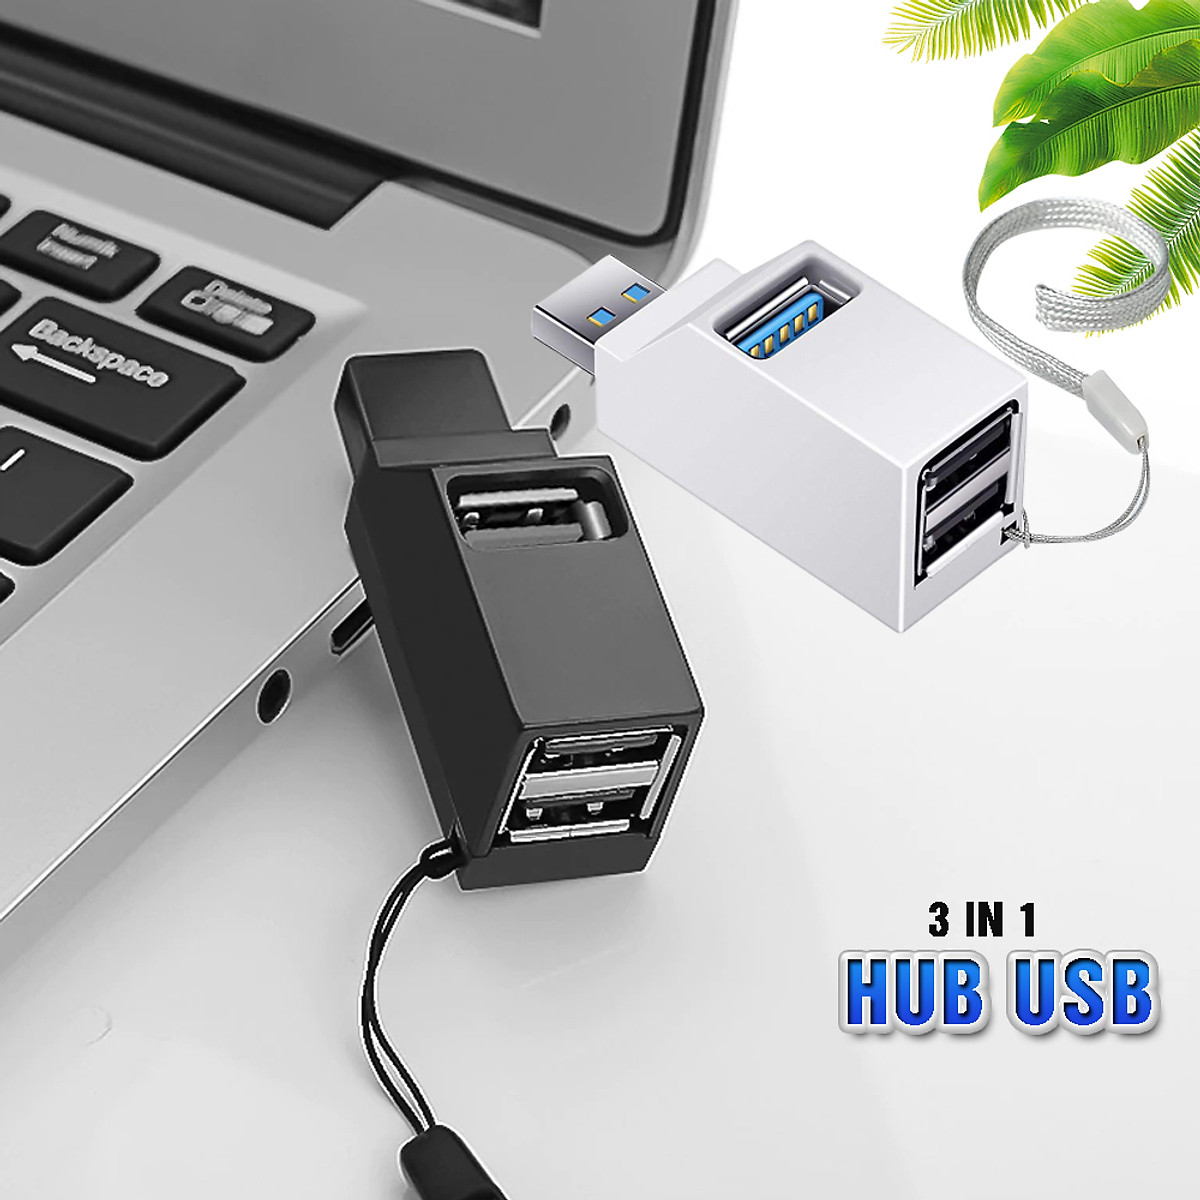 Bộ chia HUB USB 3 cổng tốc độ cao cho Máy tính, Laptop, PC, Tivi, Ô tô, xe hơi, thiết bị ngoại vi nhỏ gọn USB3.0/2.0 - Hàng chính hãng